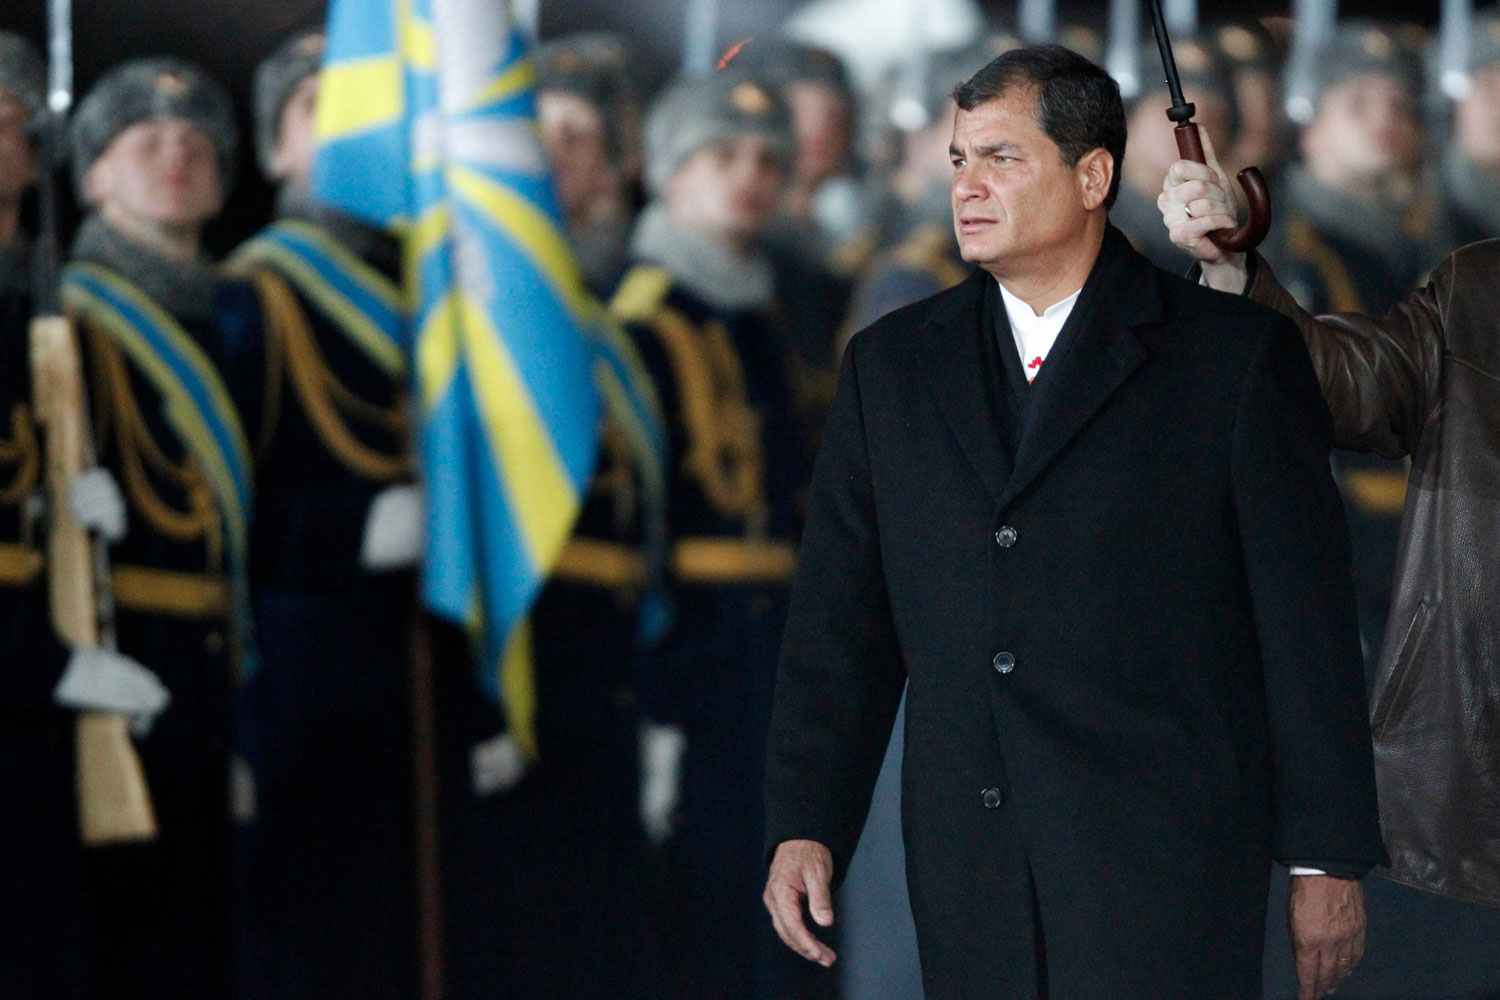 El presidente de Ecuador, Rafael Correa, llega a Rusia junto con 29 empresarios de su país